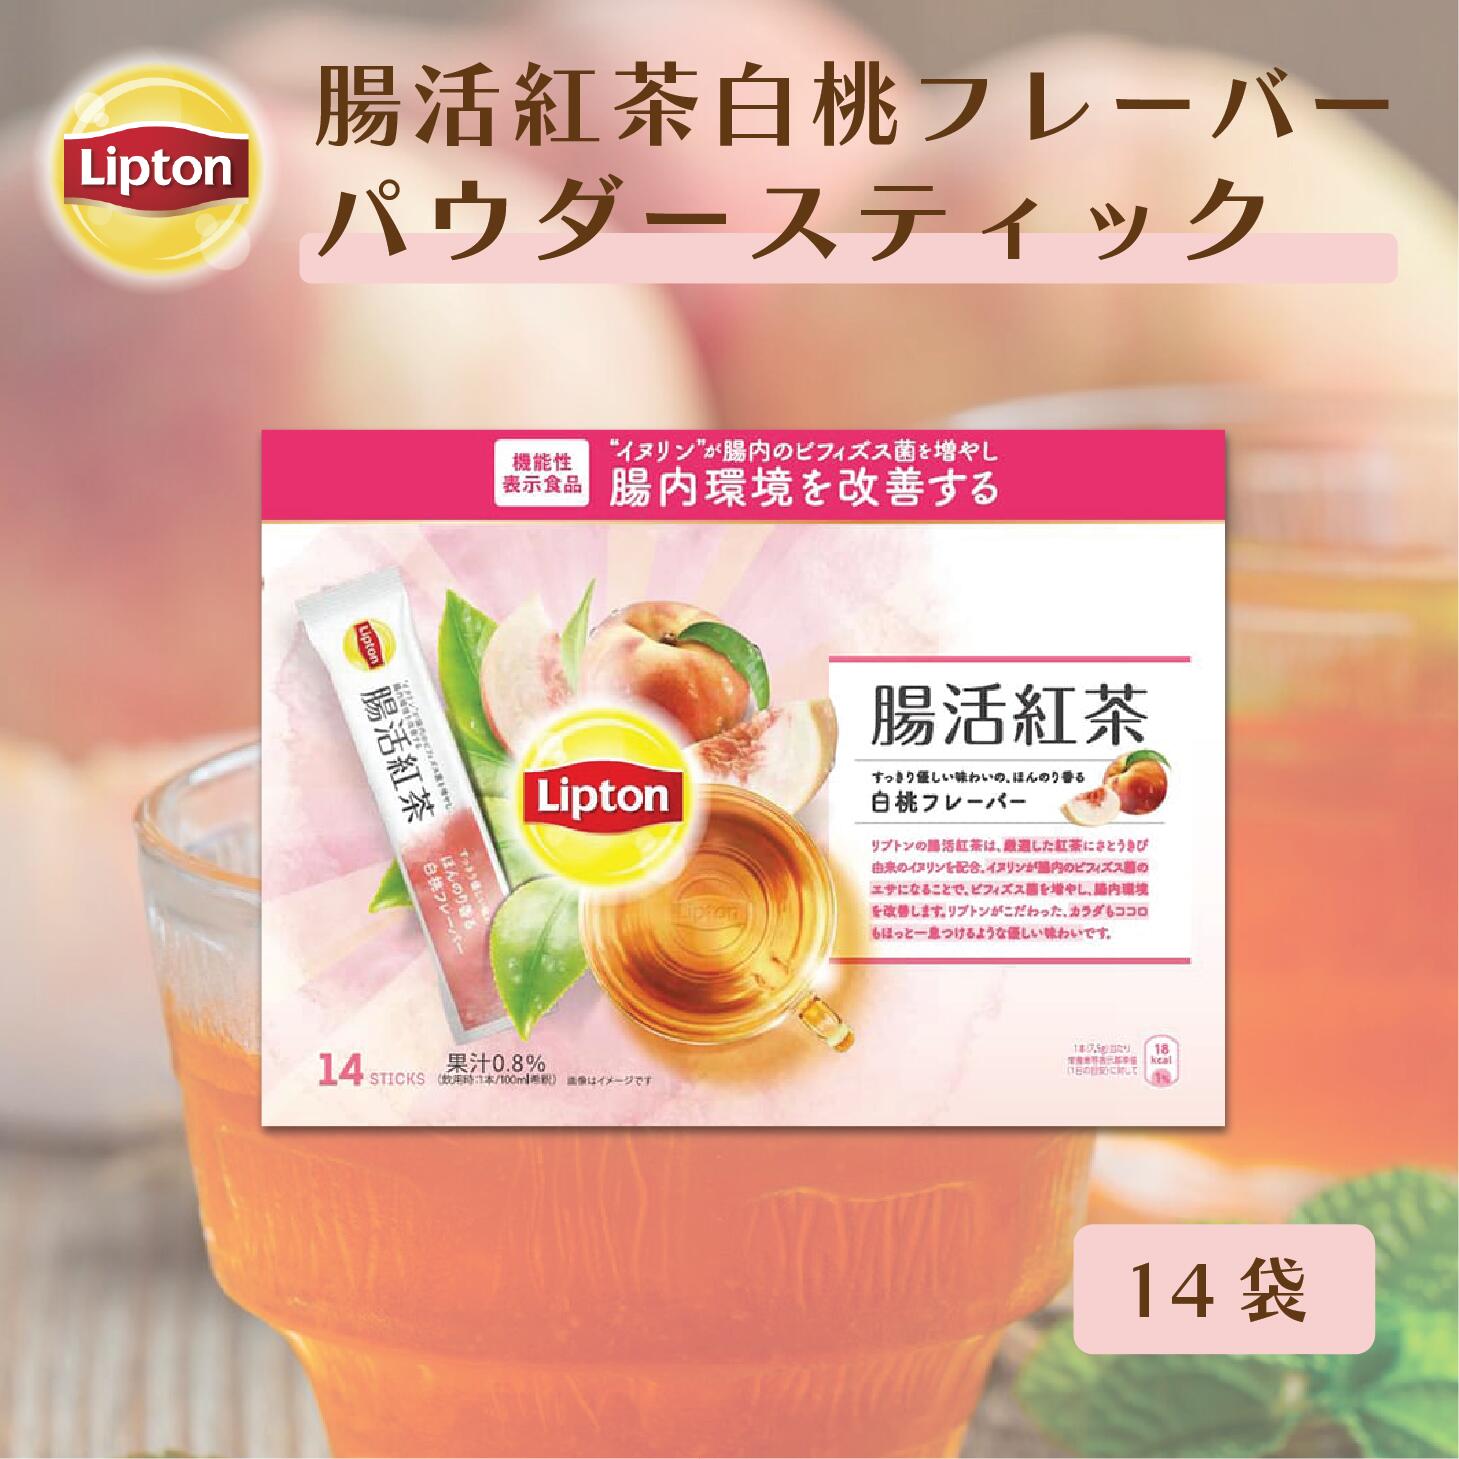 【5月20日(月)限定/ポイント5倍】リプトン 紅茶 ブランド 機能性表示食品 腸活紅茶 白桃フレーバー パウダースティック 14袋 Lipton